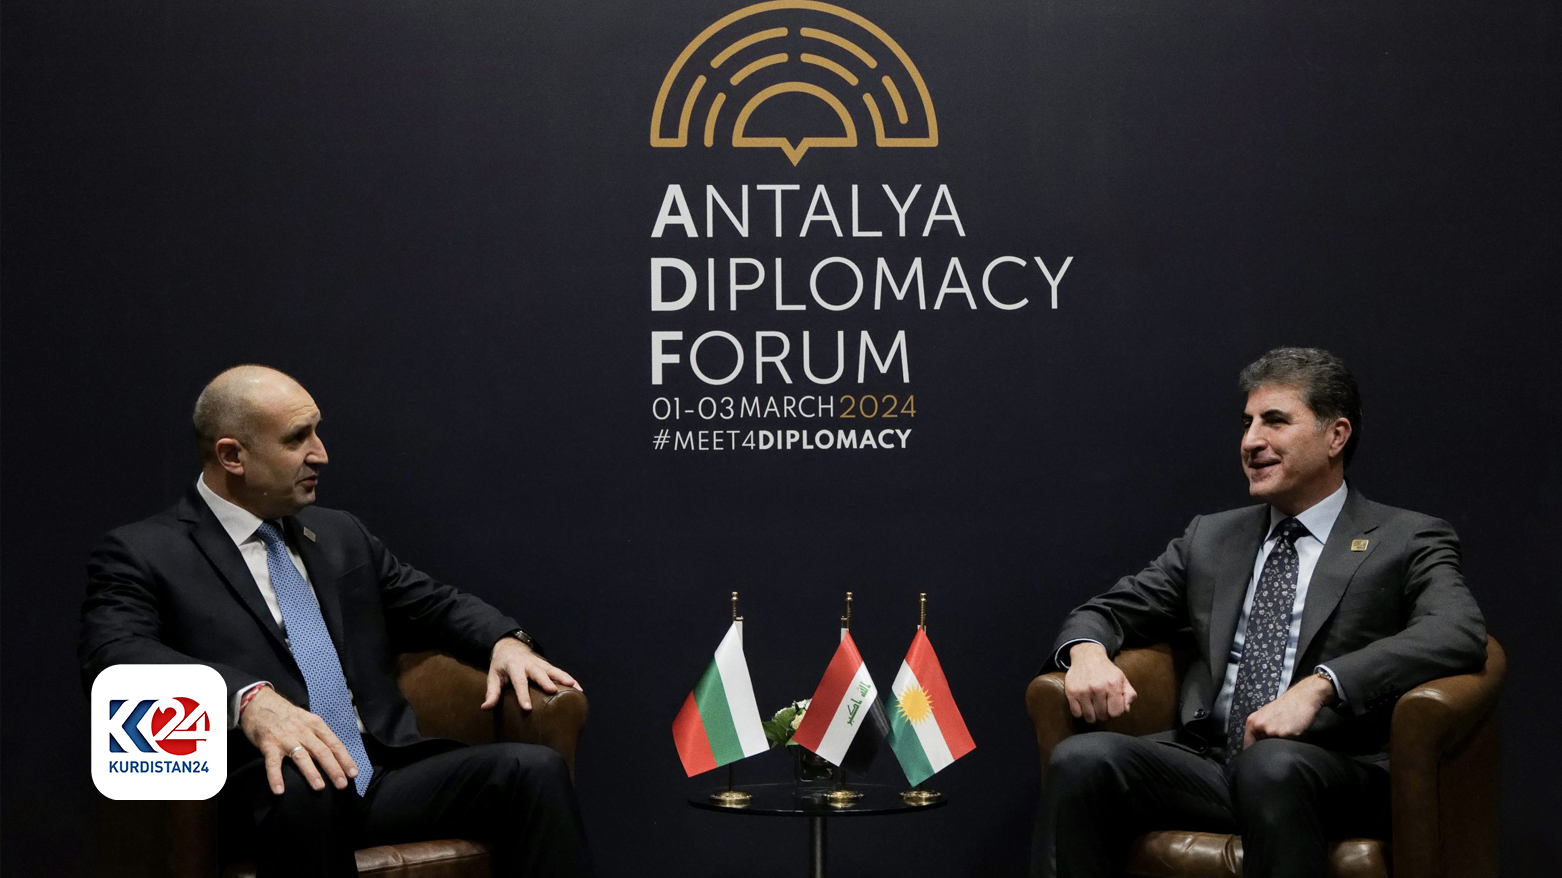 Bulgaristan Cumhurbaşkanı Rumen Radev ve Kürdistan Bölgesi Başkanı Neçirvan Barzani